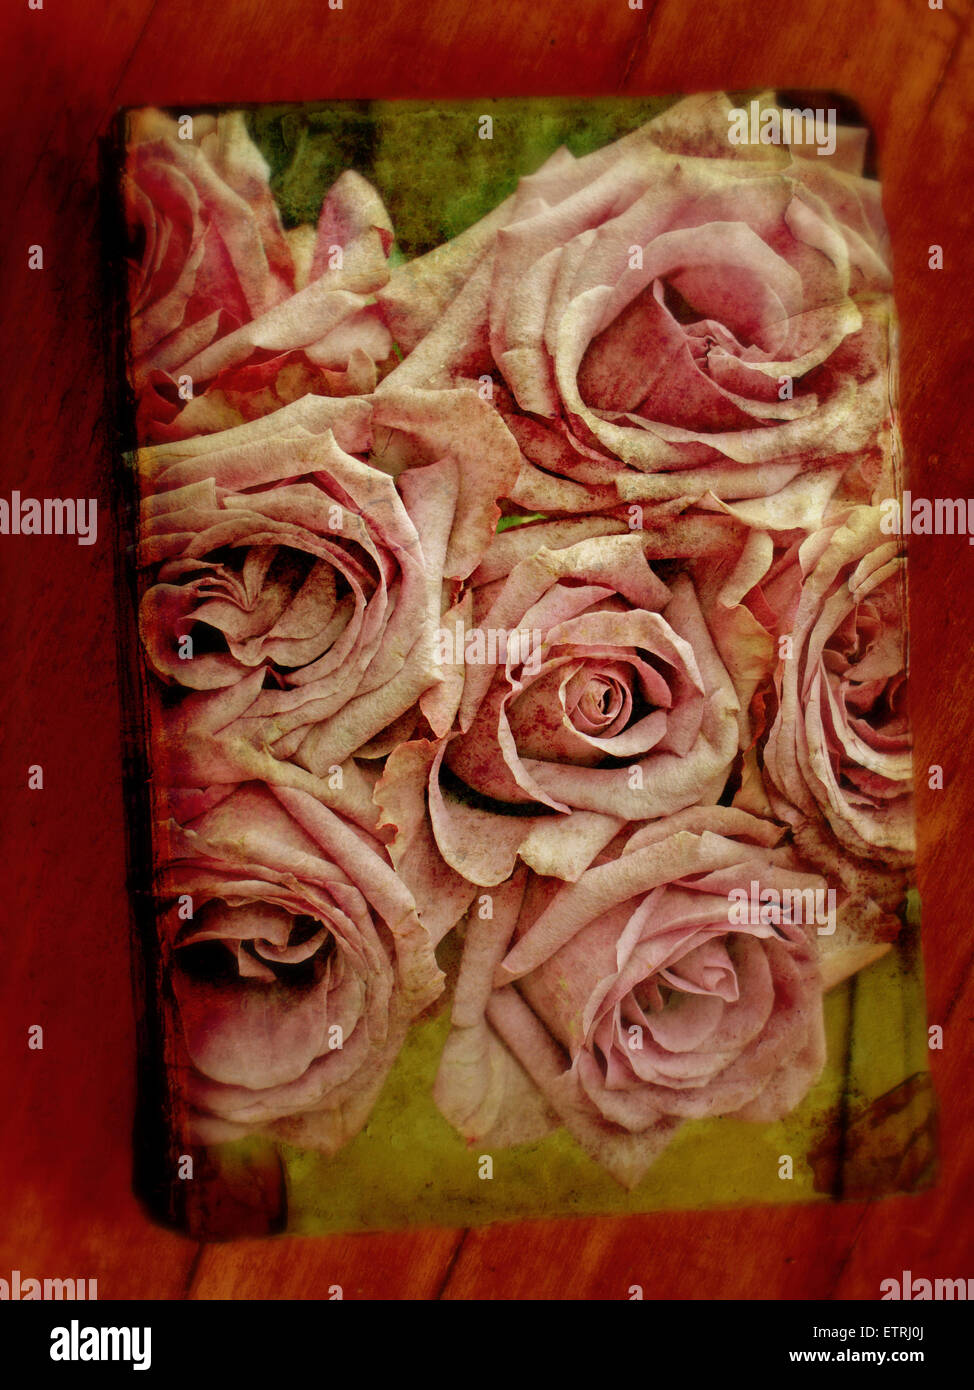 Montage de roses sur un vieux livre Banque D'Images